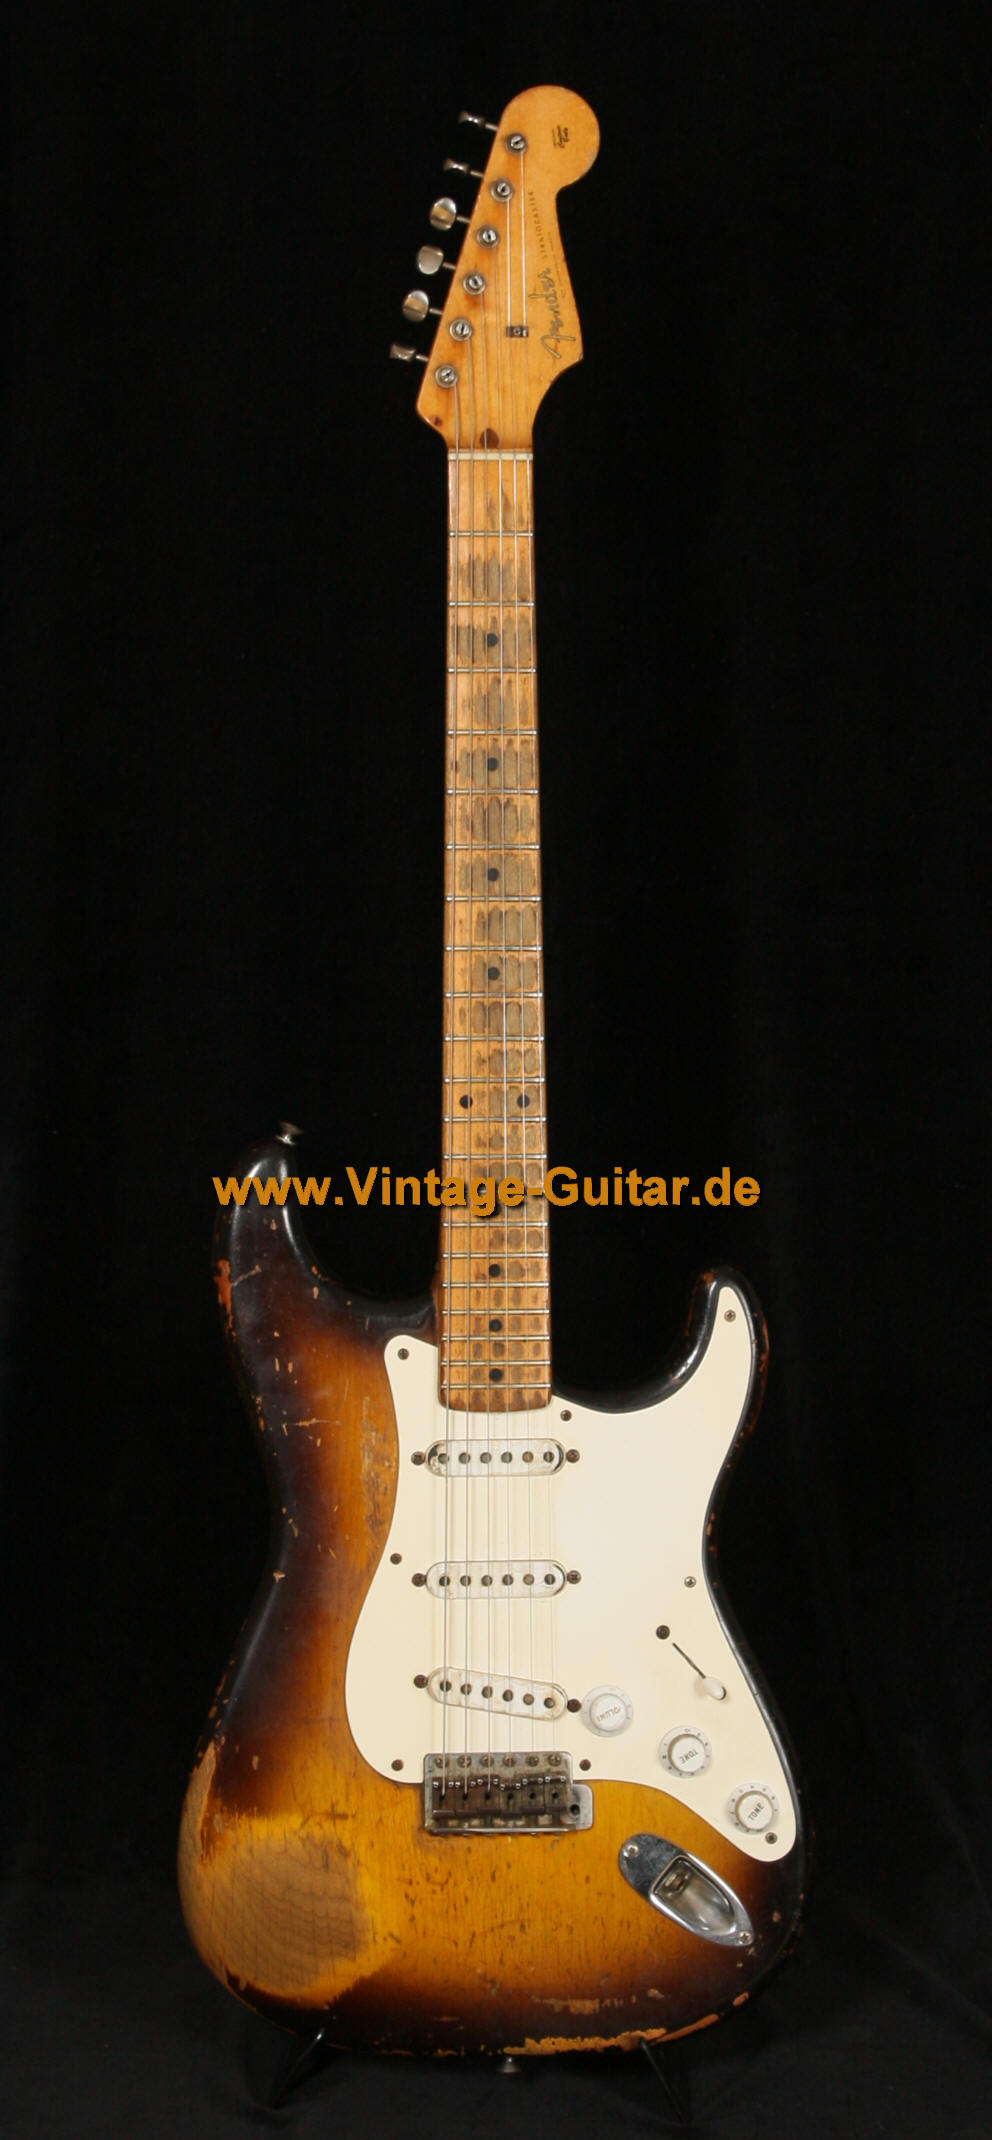 Fender_Stratocaster_1956_front.jpg